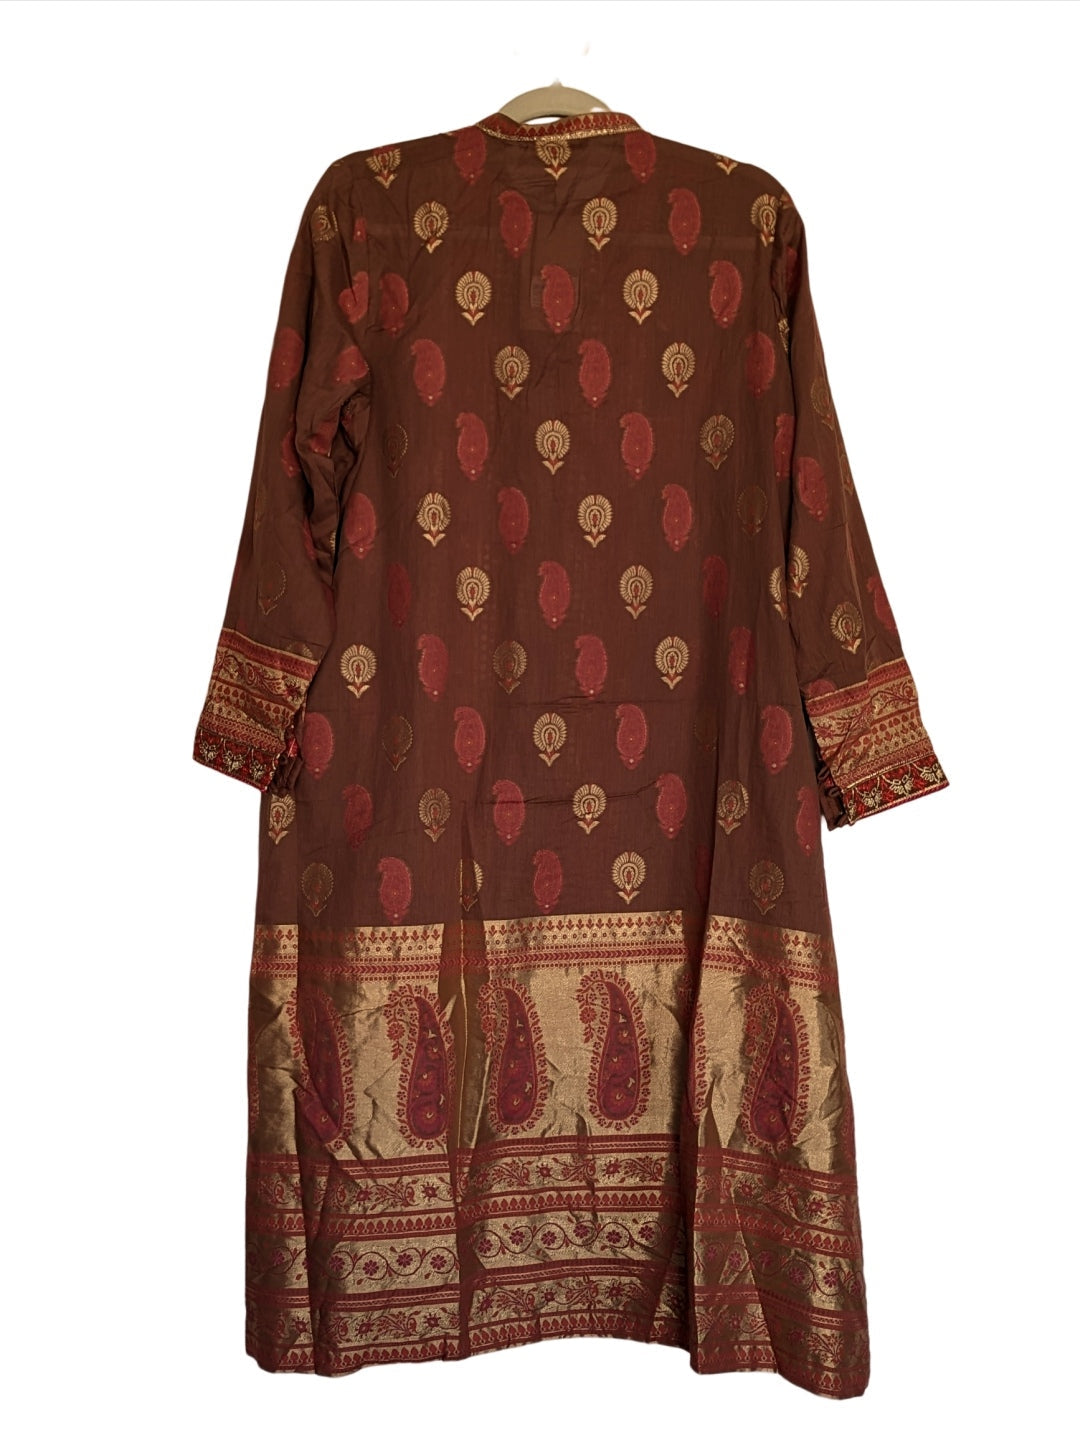 Embroidery on Lawn Dress - Pakistani Dress - K110B1 | Fabricoz USA